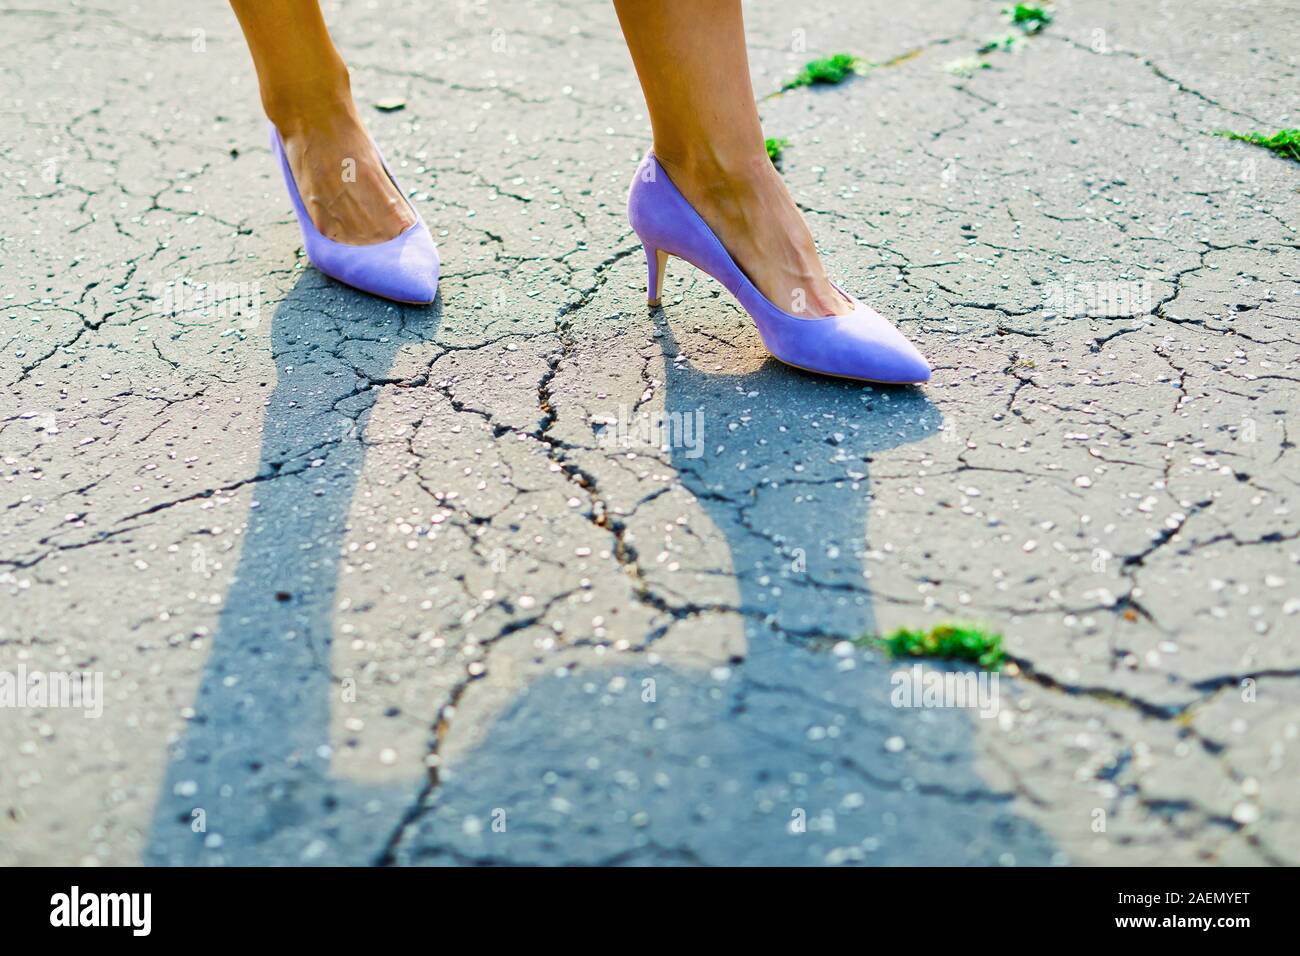 Pieds de femme violet portant des talons hauts, des chaussures élégantes sur surface fissurée Banque D'Images